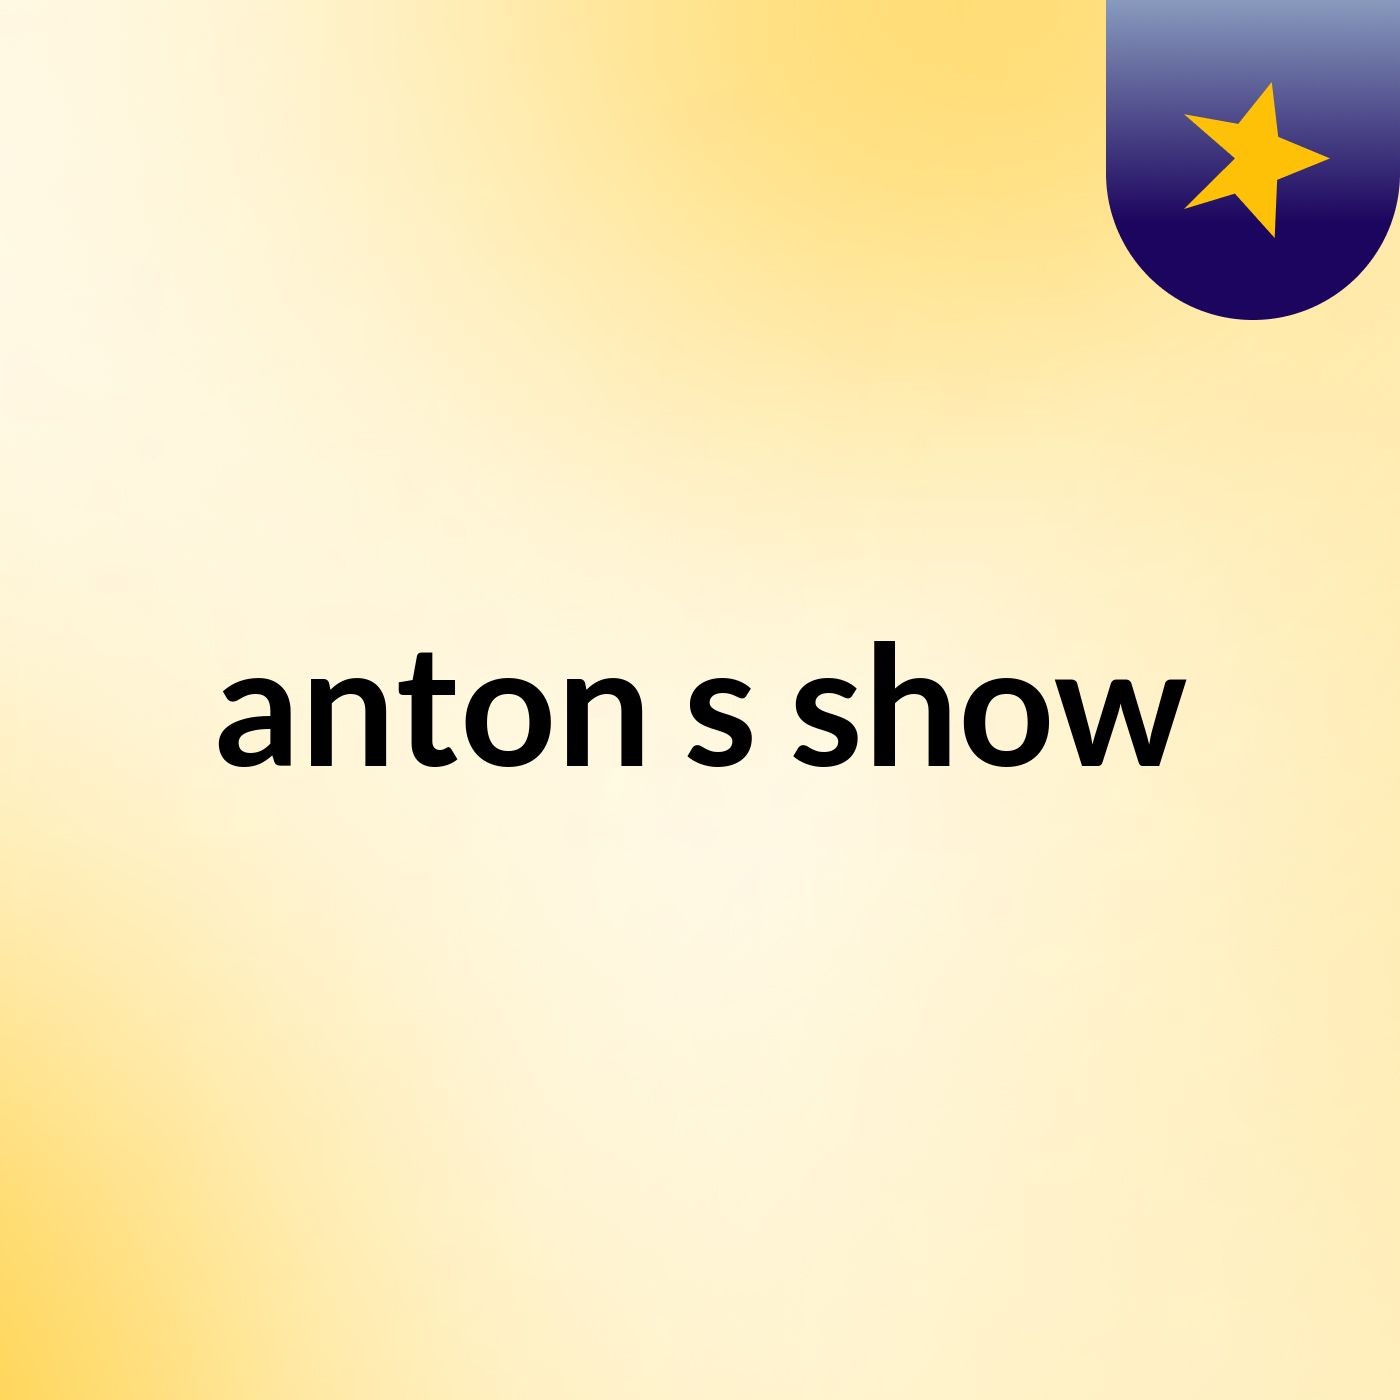 anton's show